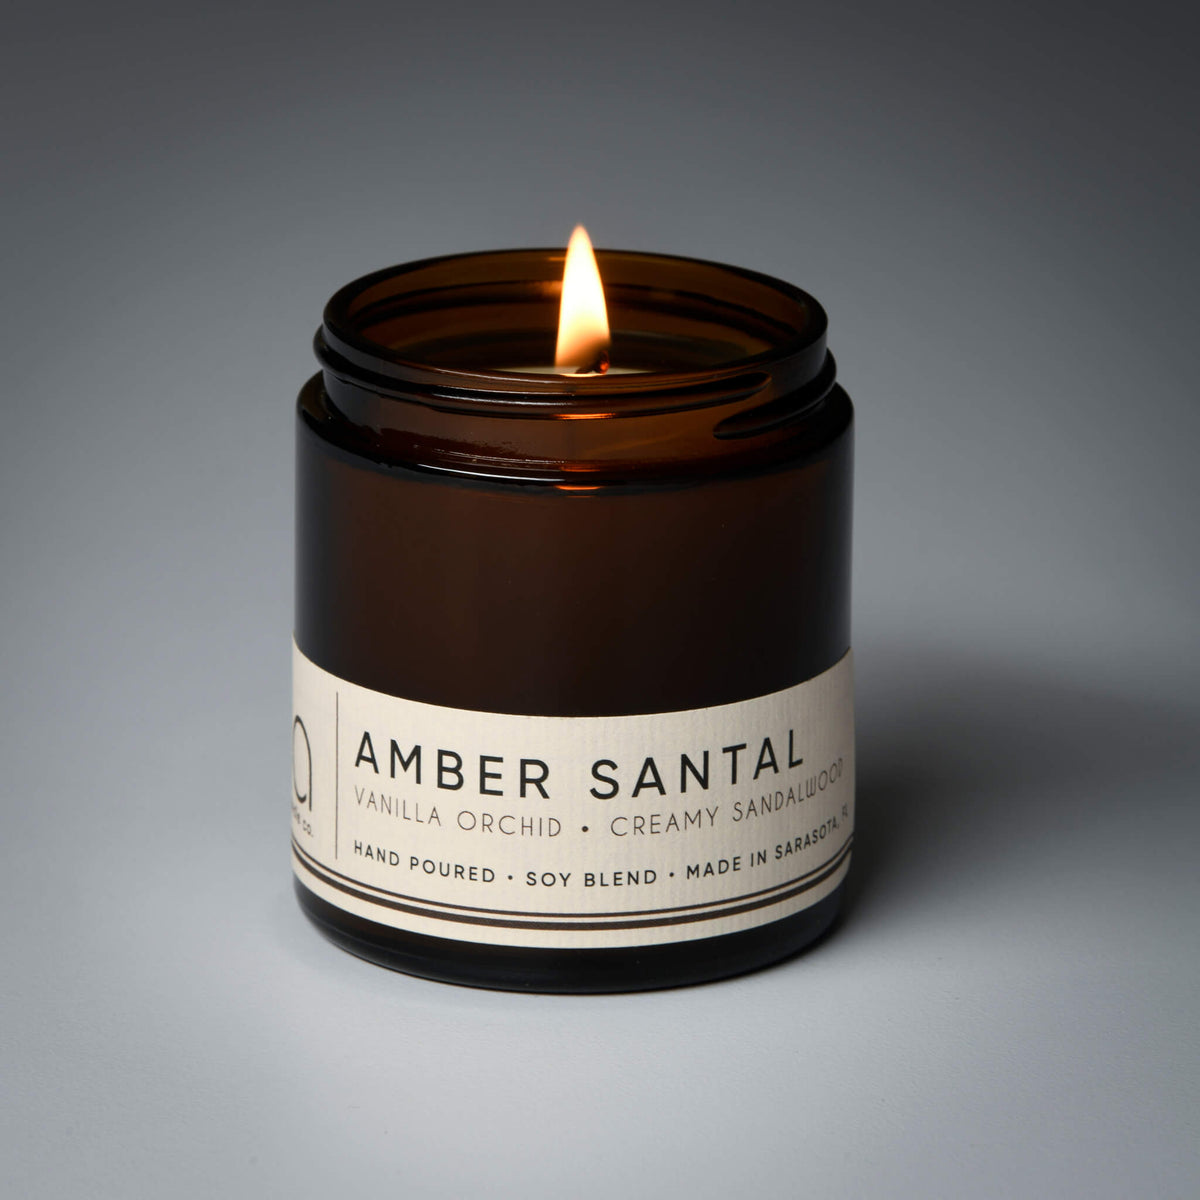 Santal Amber – NoHo Candle Co.